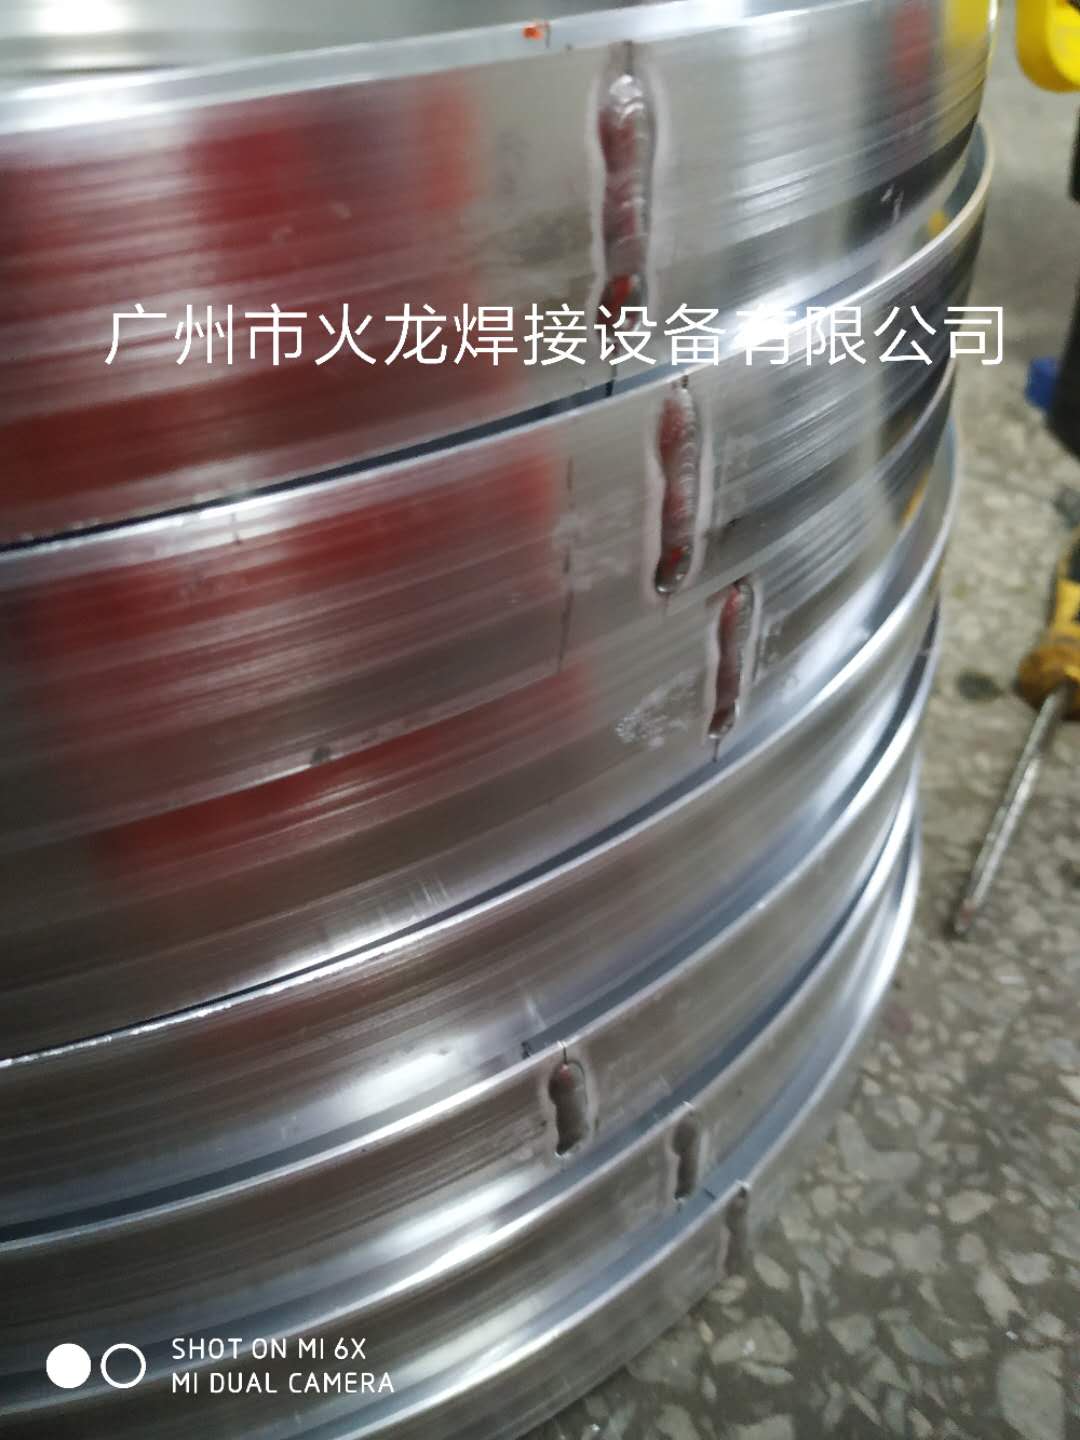 中山灯饰铝圆圈自动焊接设备广州火龙焊机 铝材焊接设备图片